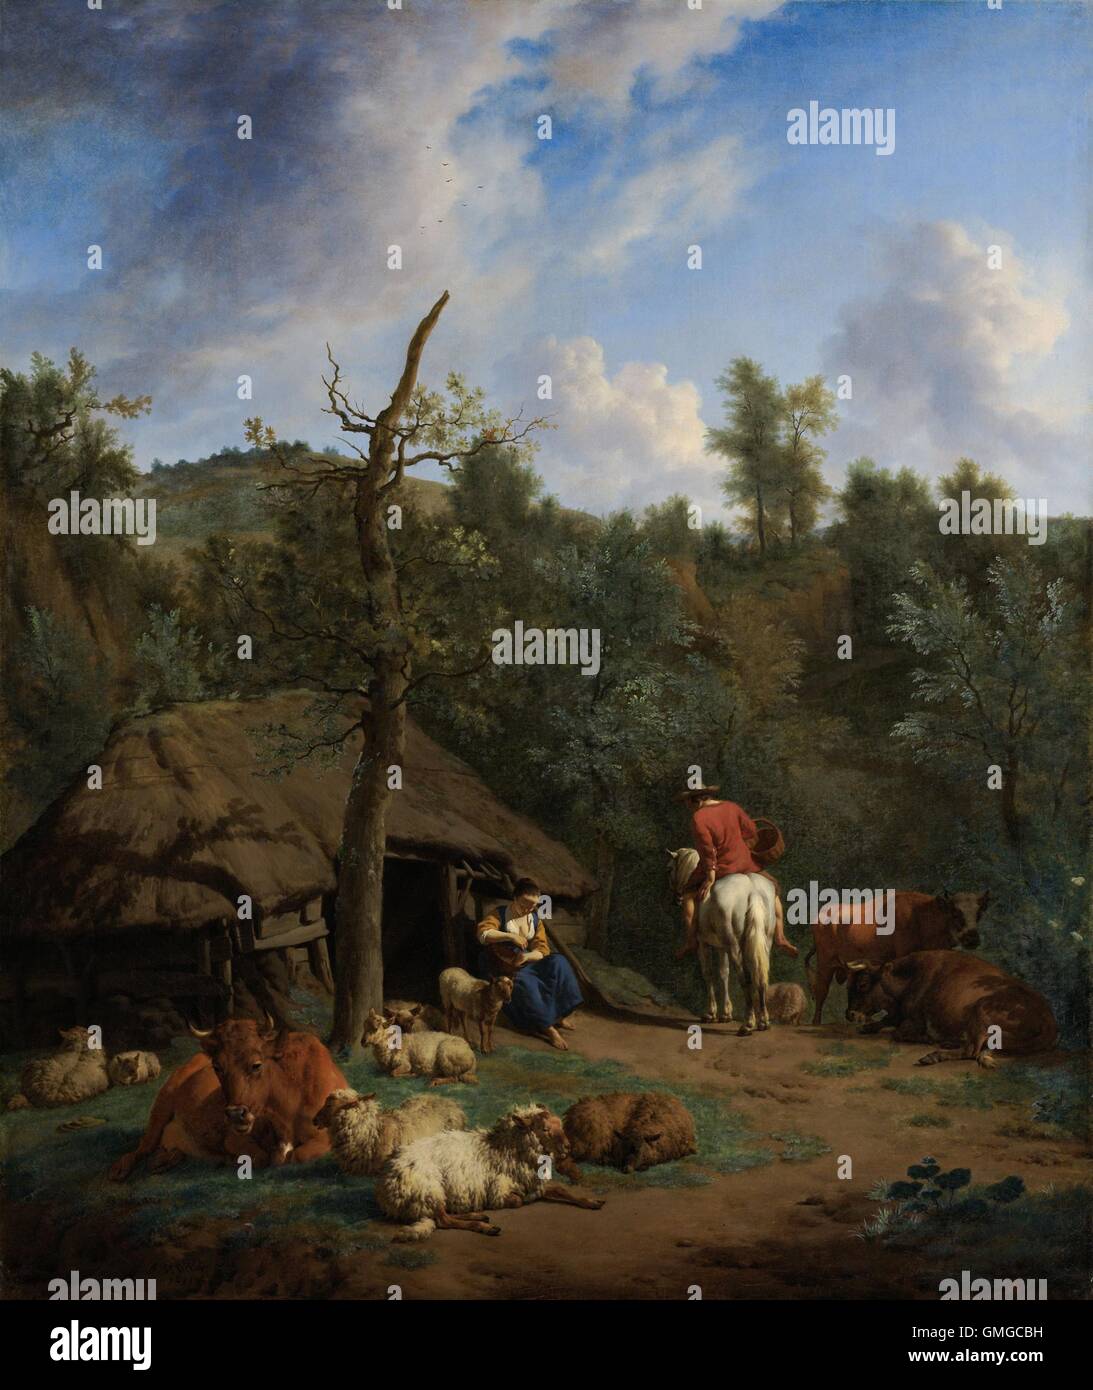 La Cabane, par Adriaen van de Velde, 1671, la peinture hollandaise, huile sur toile. Vallonné Paysage italien avec une jeune femme aux pieds nus à l'entrée d'une cabane de berger. Aussi, un homme nu est assis sur un cheval blanc avec un panier. Le bétail et les moutons se trouvent à proximité de la hutte au toit de chaume (BSLOC 2016 3 214) Banque D'Images